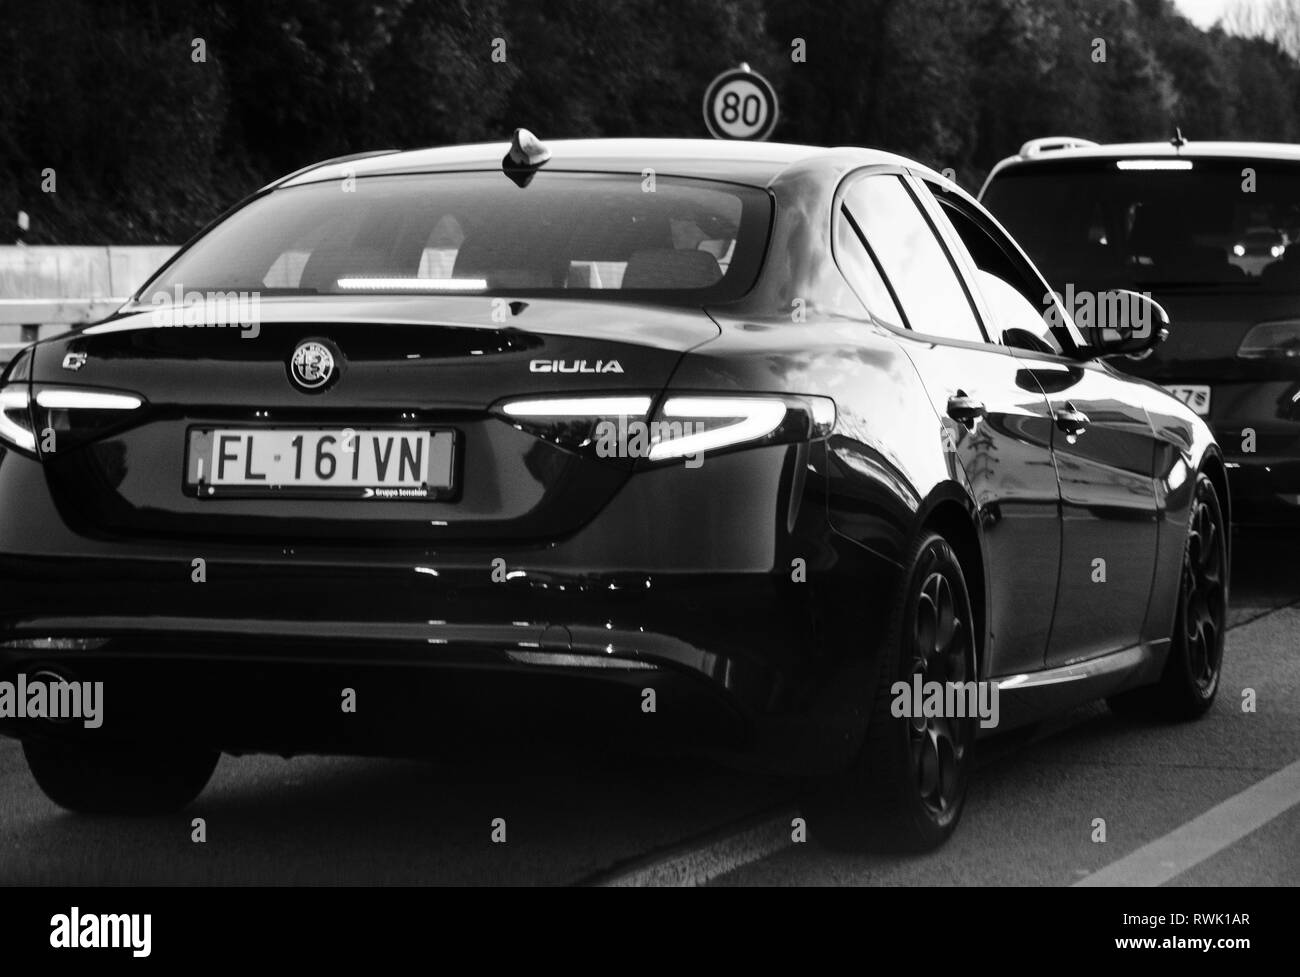 Dortmund, Allemagne - 29 octobre 2018 : vue arrière de l'Alfa Romeo Giulia sport car dans embouteillage sur l'autoroute allemande à la tombée de la photographie noir et blanc Banque D'Images